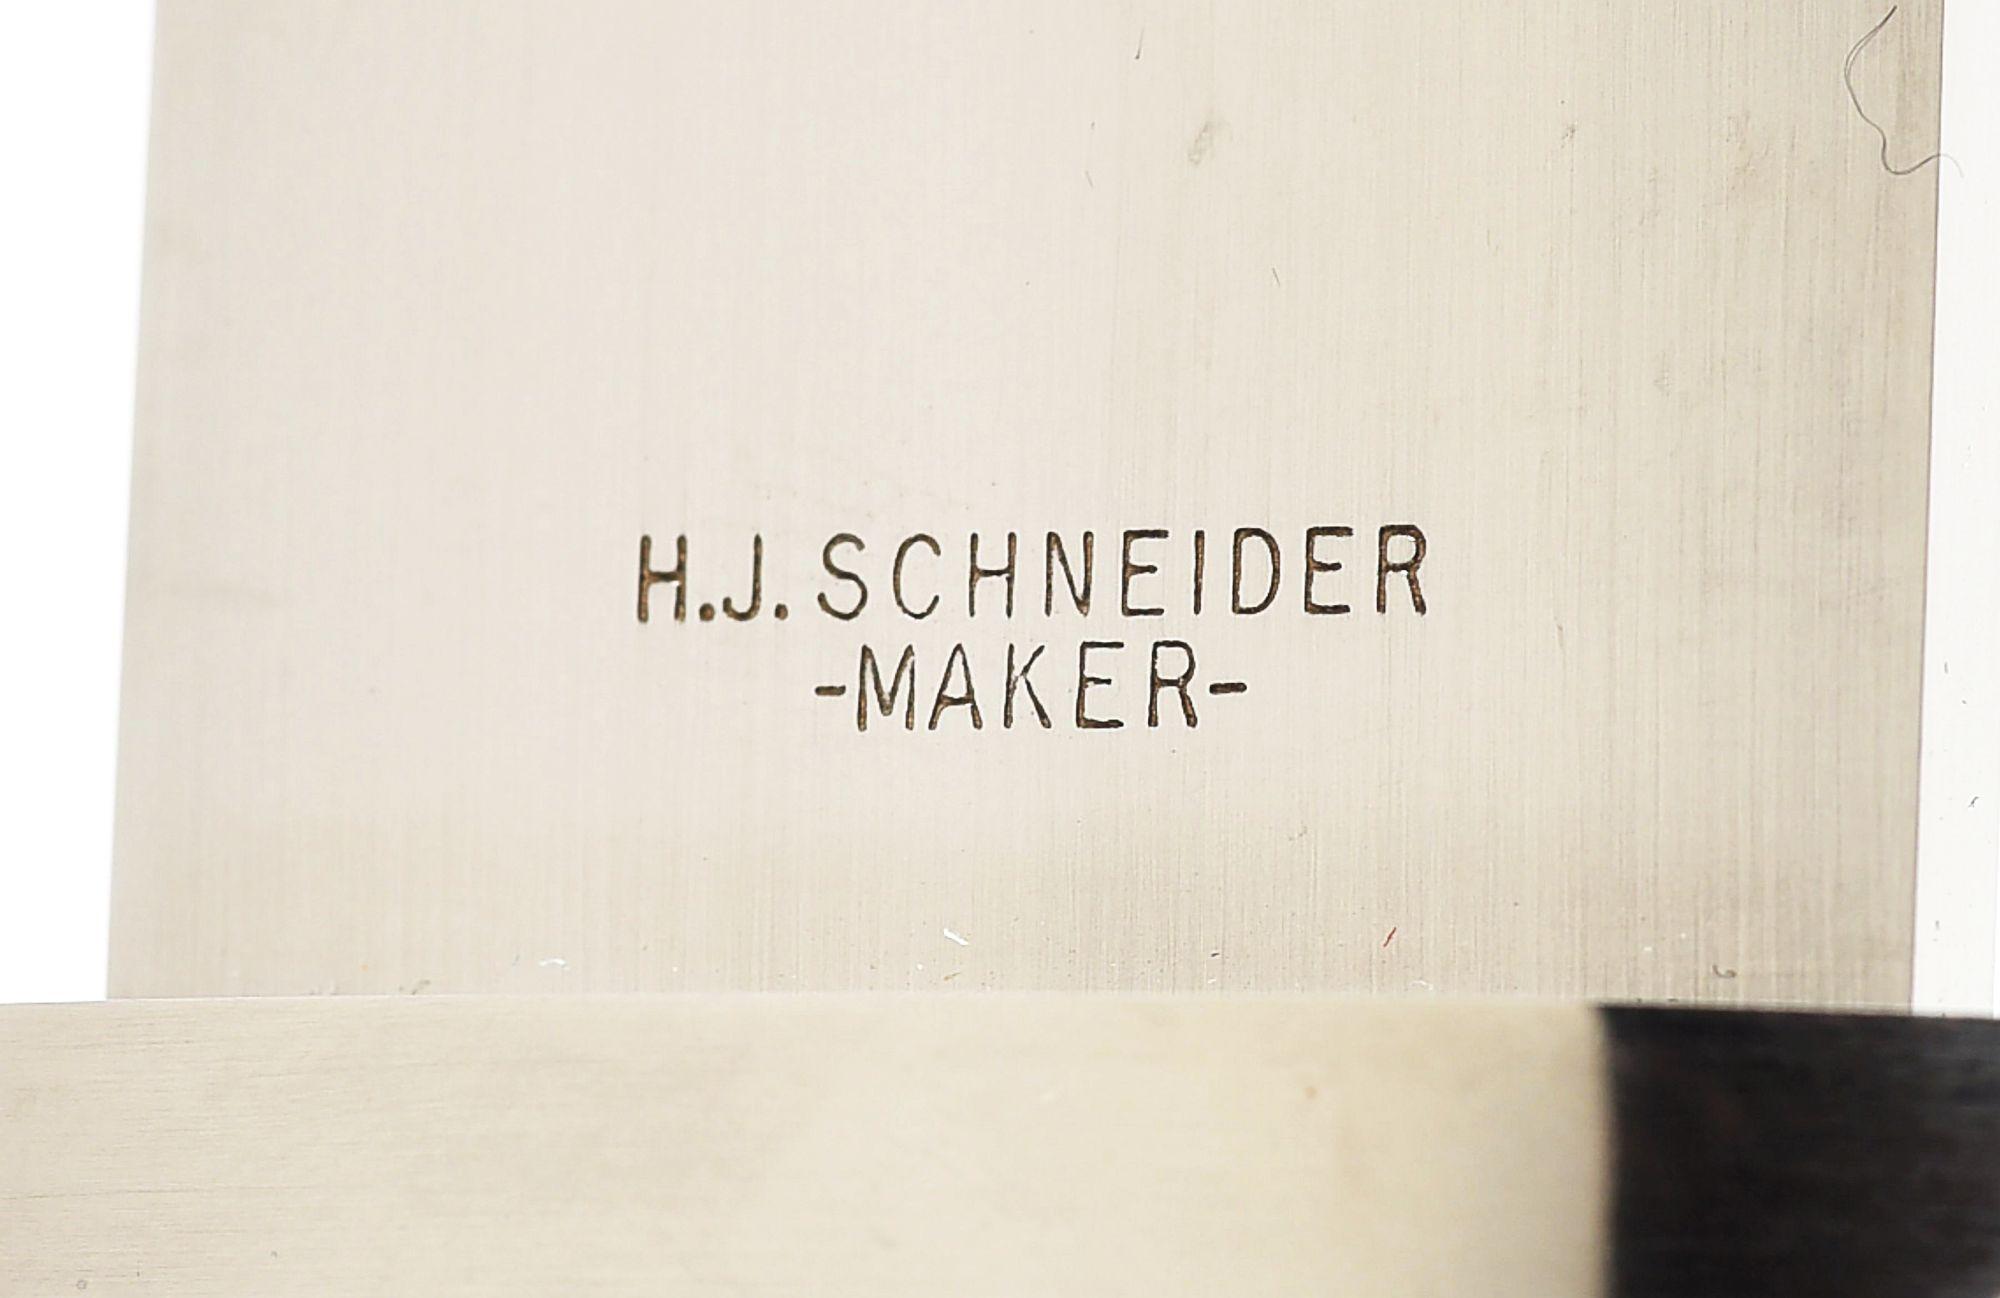 HERMAN SCHNEIDER STAG HANDLED DAGGER.